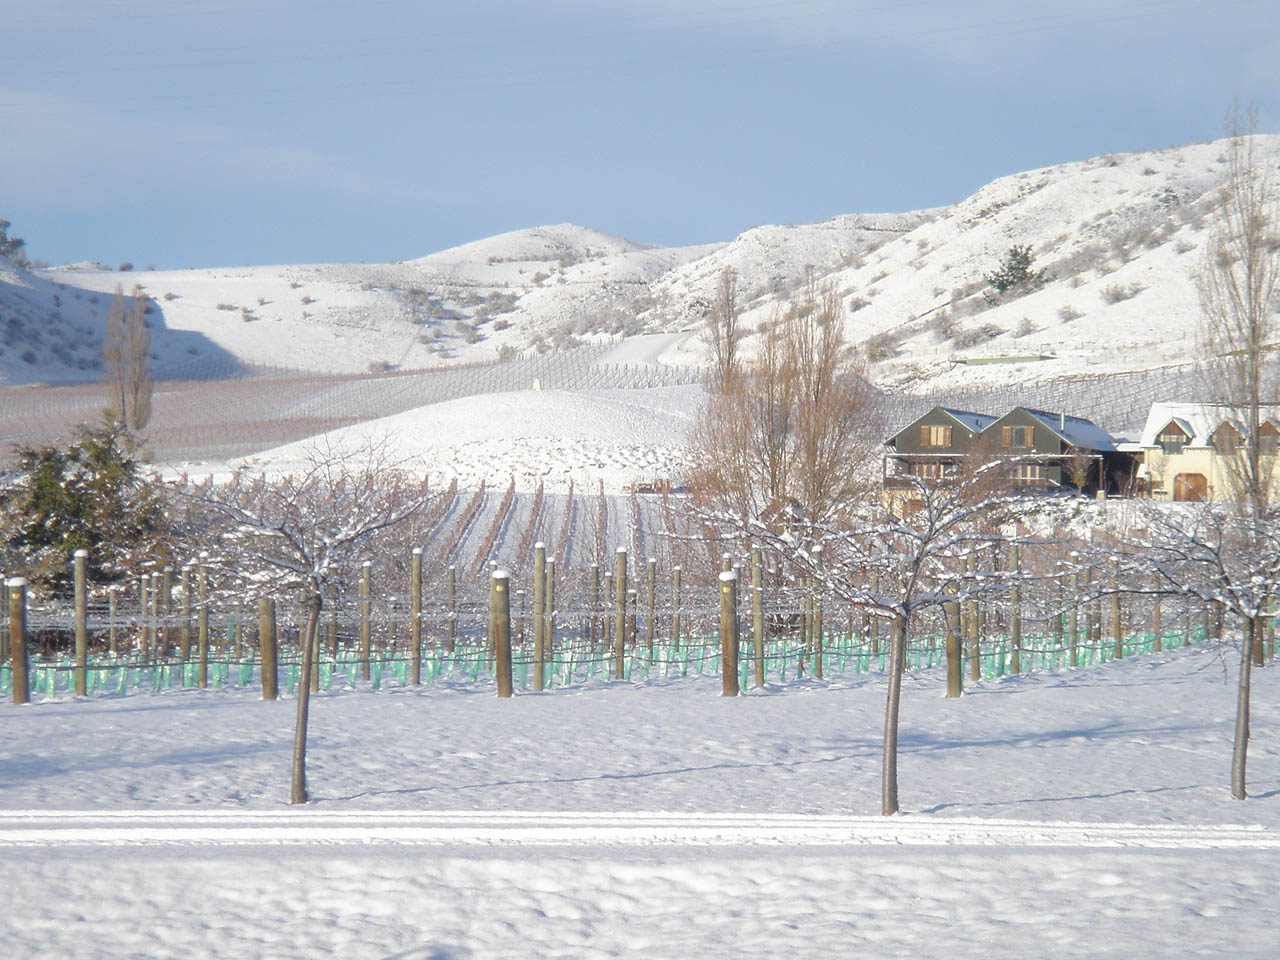 Felton Road - "The Elms" vineyard in winter